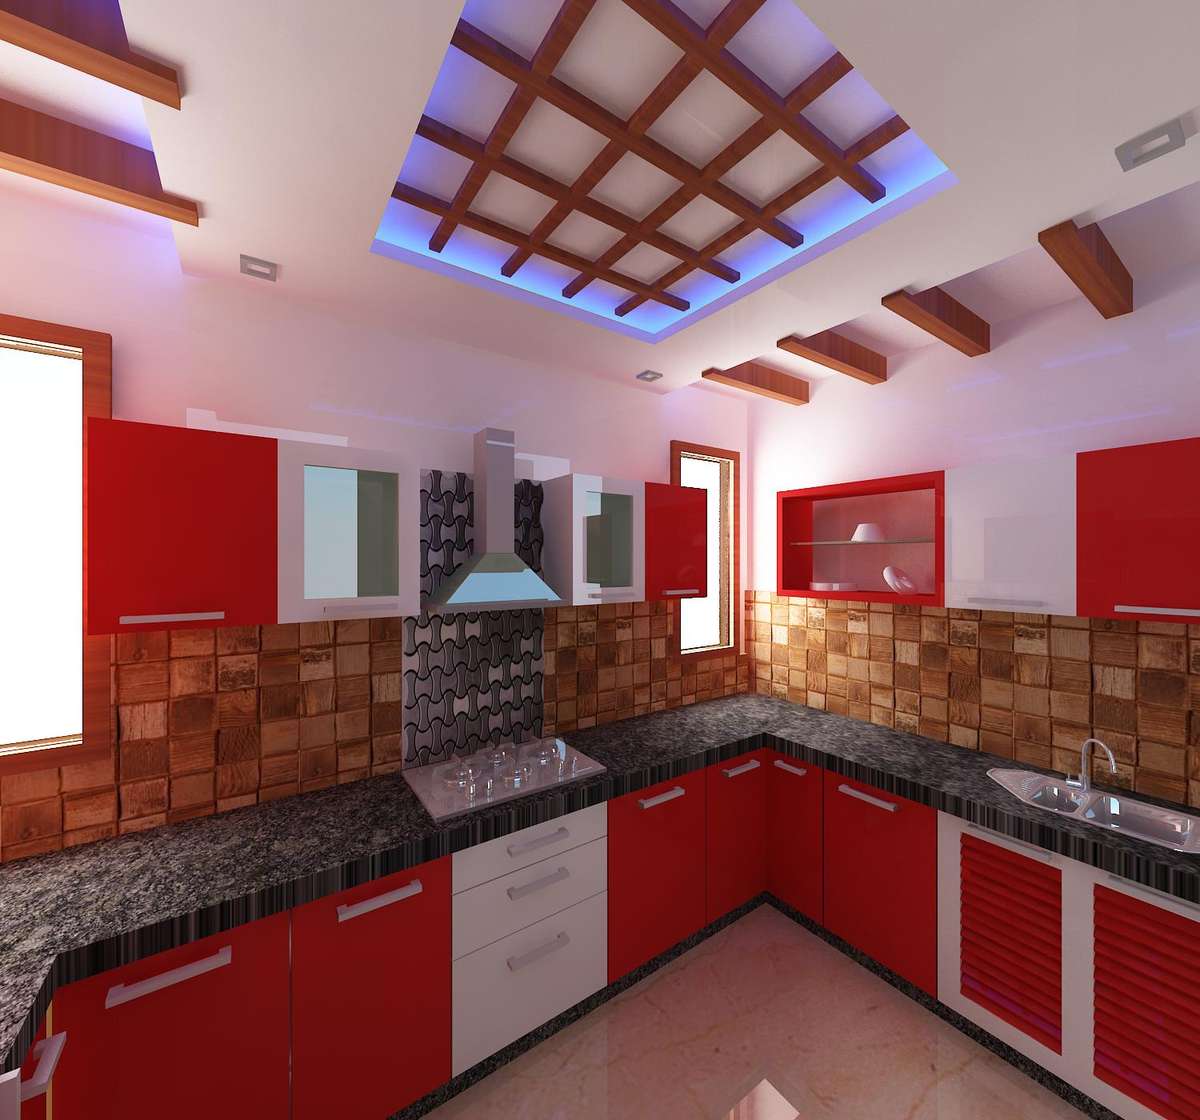 Ceiling, Kitchen, Storage, Lighting Designs by Interior Designer Samar pardhan, Delhi | Kolo